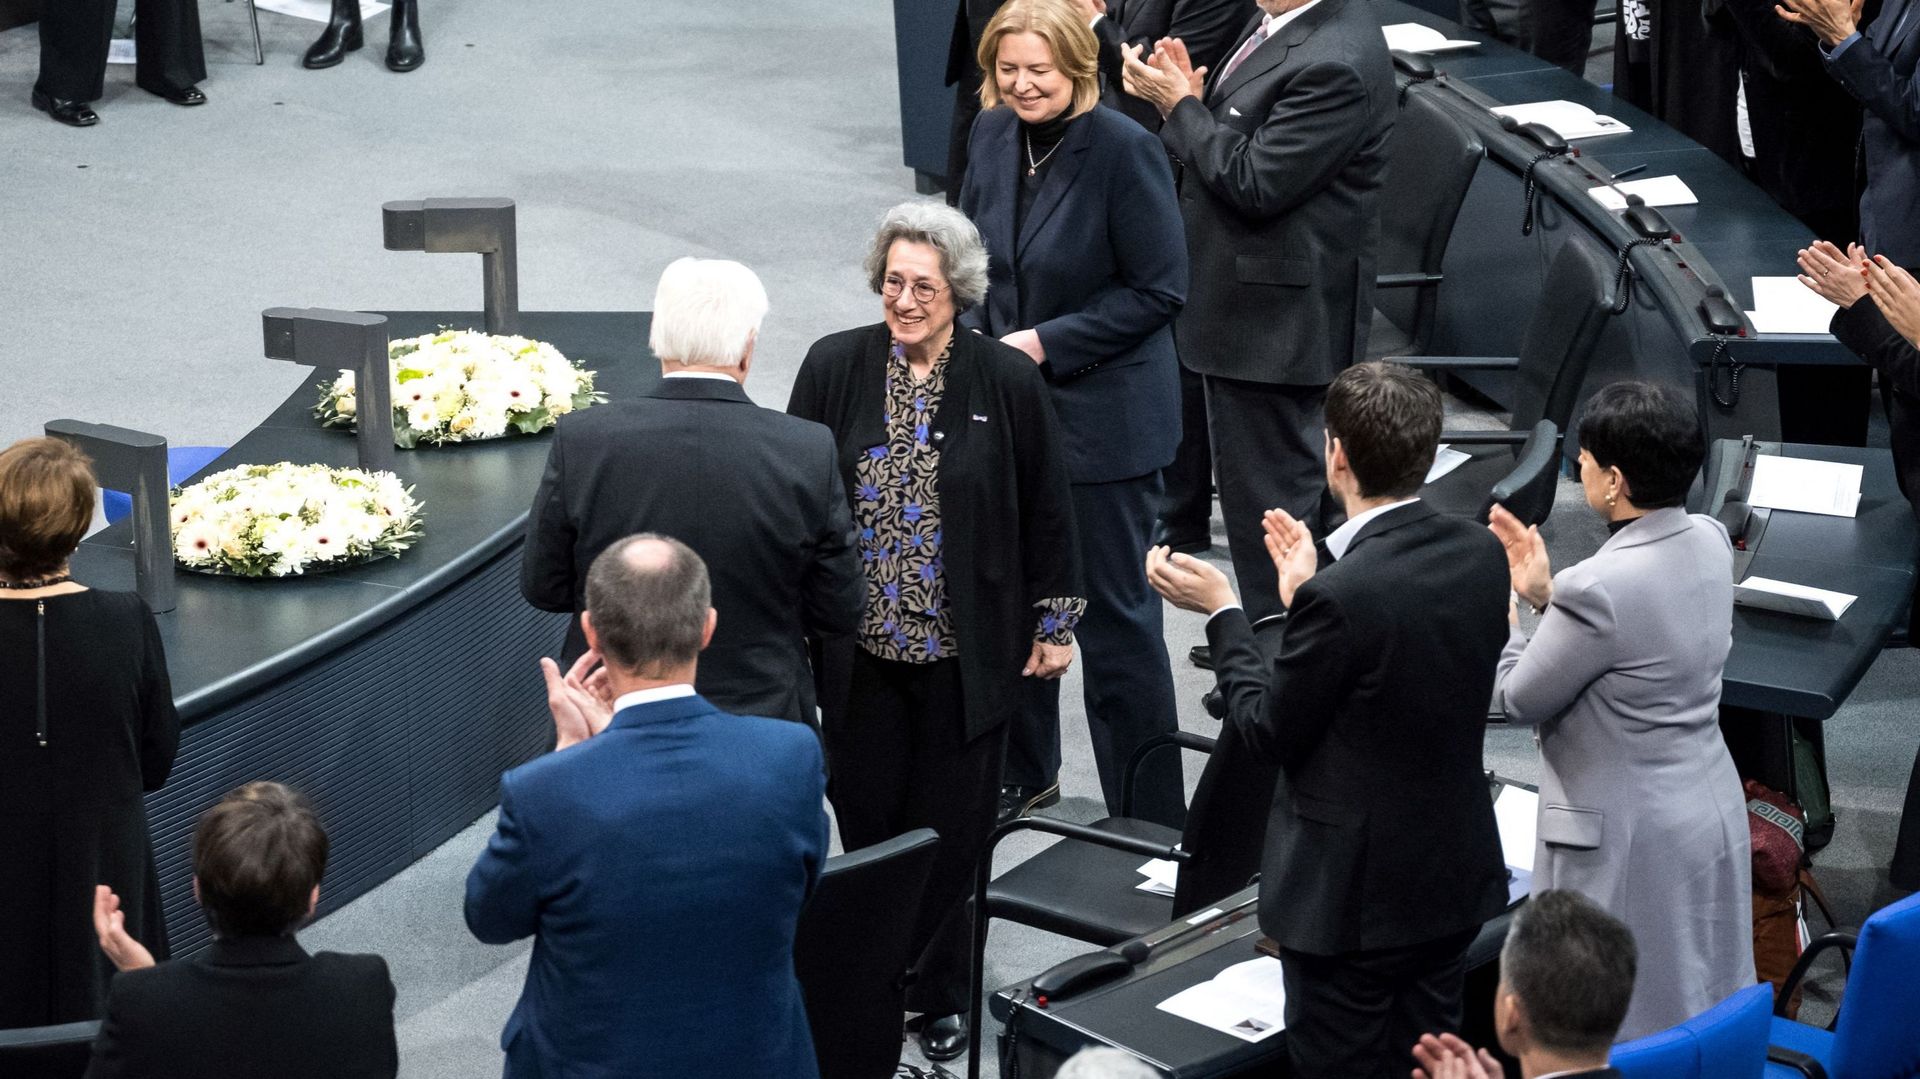 Rozette Kats (C), survivante de l’Holocauste, est applaudie par le président allemand Frank-Walter Steinmeier et d’autres invités lors de la cérémonie annuelle à la mémoire des victimes et des survivants de l’Holocauste dans la salle plénière du Bundestag